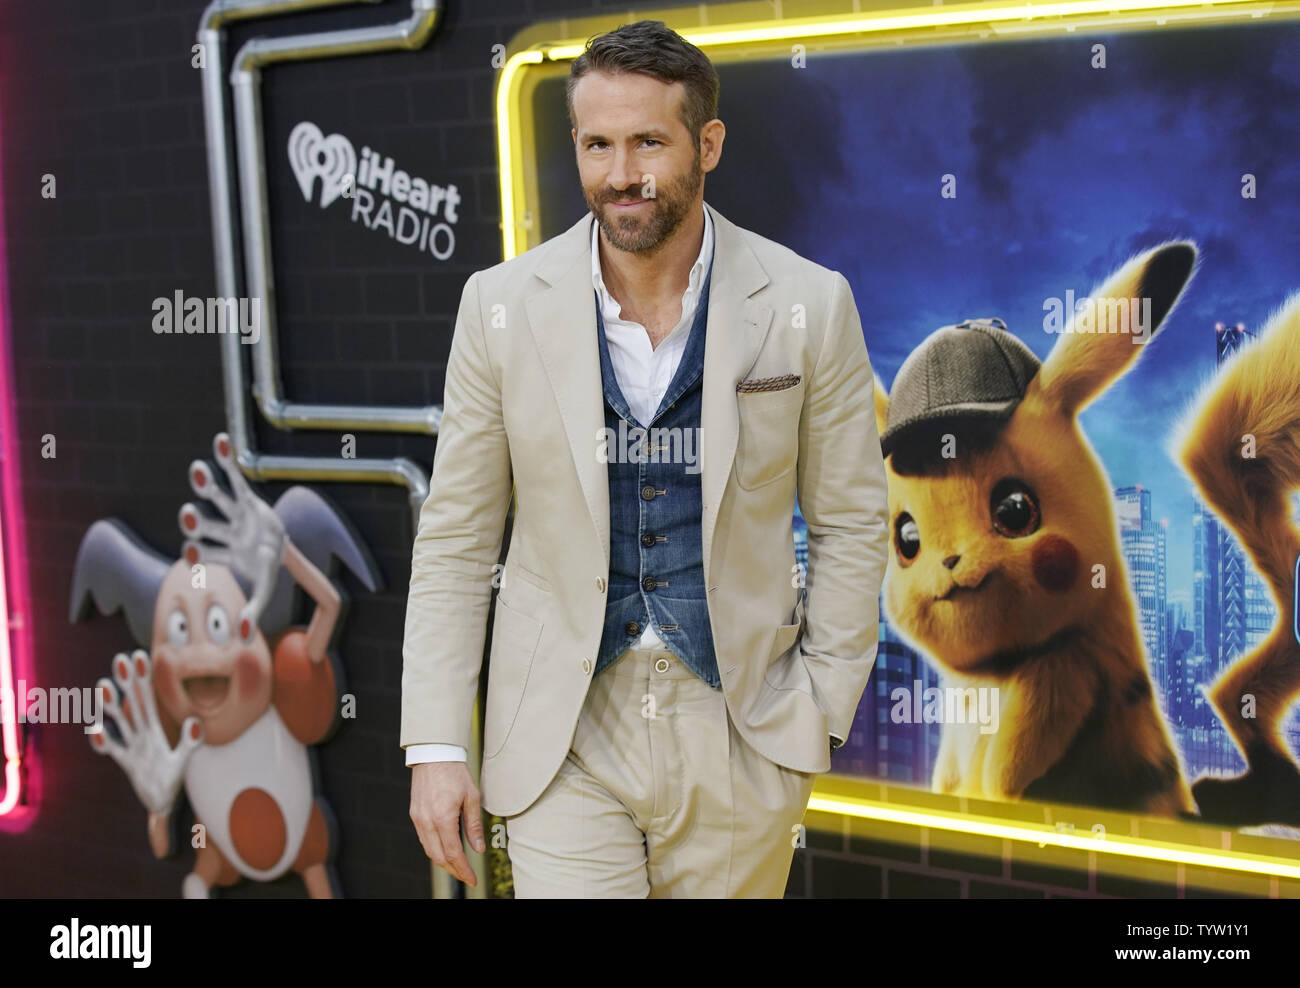 Ryan Reynolds arrive sur le tapis rouge à la détective Pokemon Pikachu U.S. Premiere sur Times Square, sur Mai 02, 2019 à New York. Photo de John Angelillo/UPI Banque D'Images